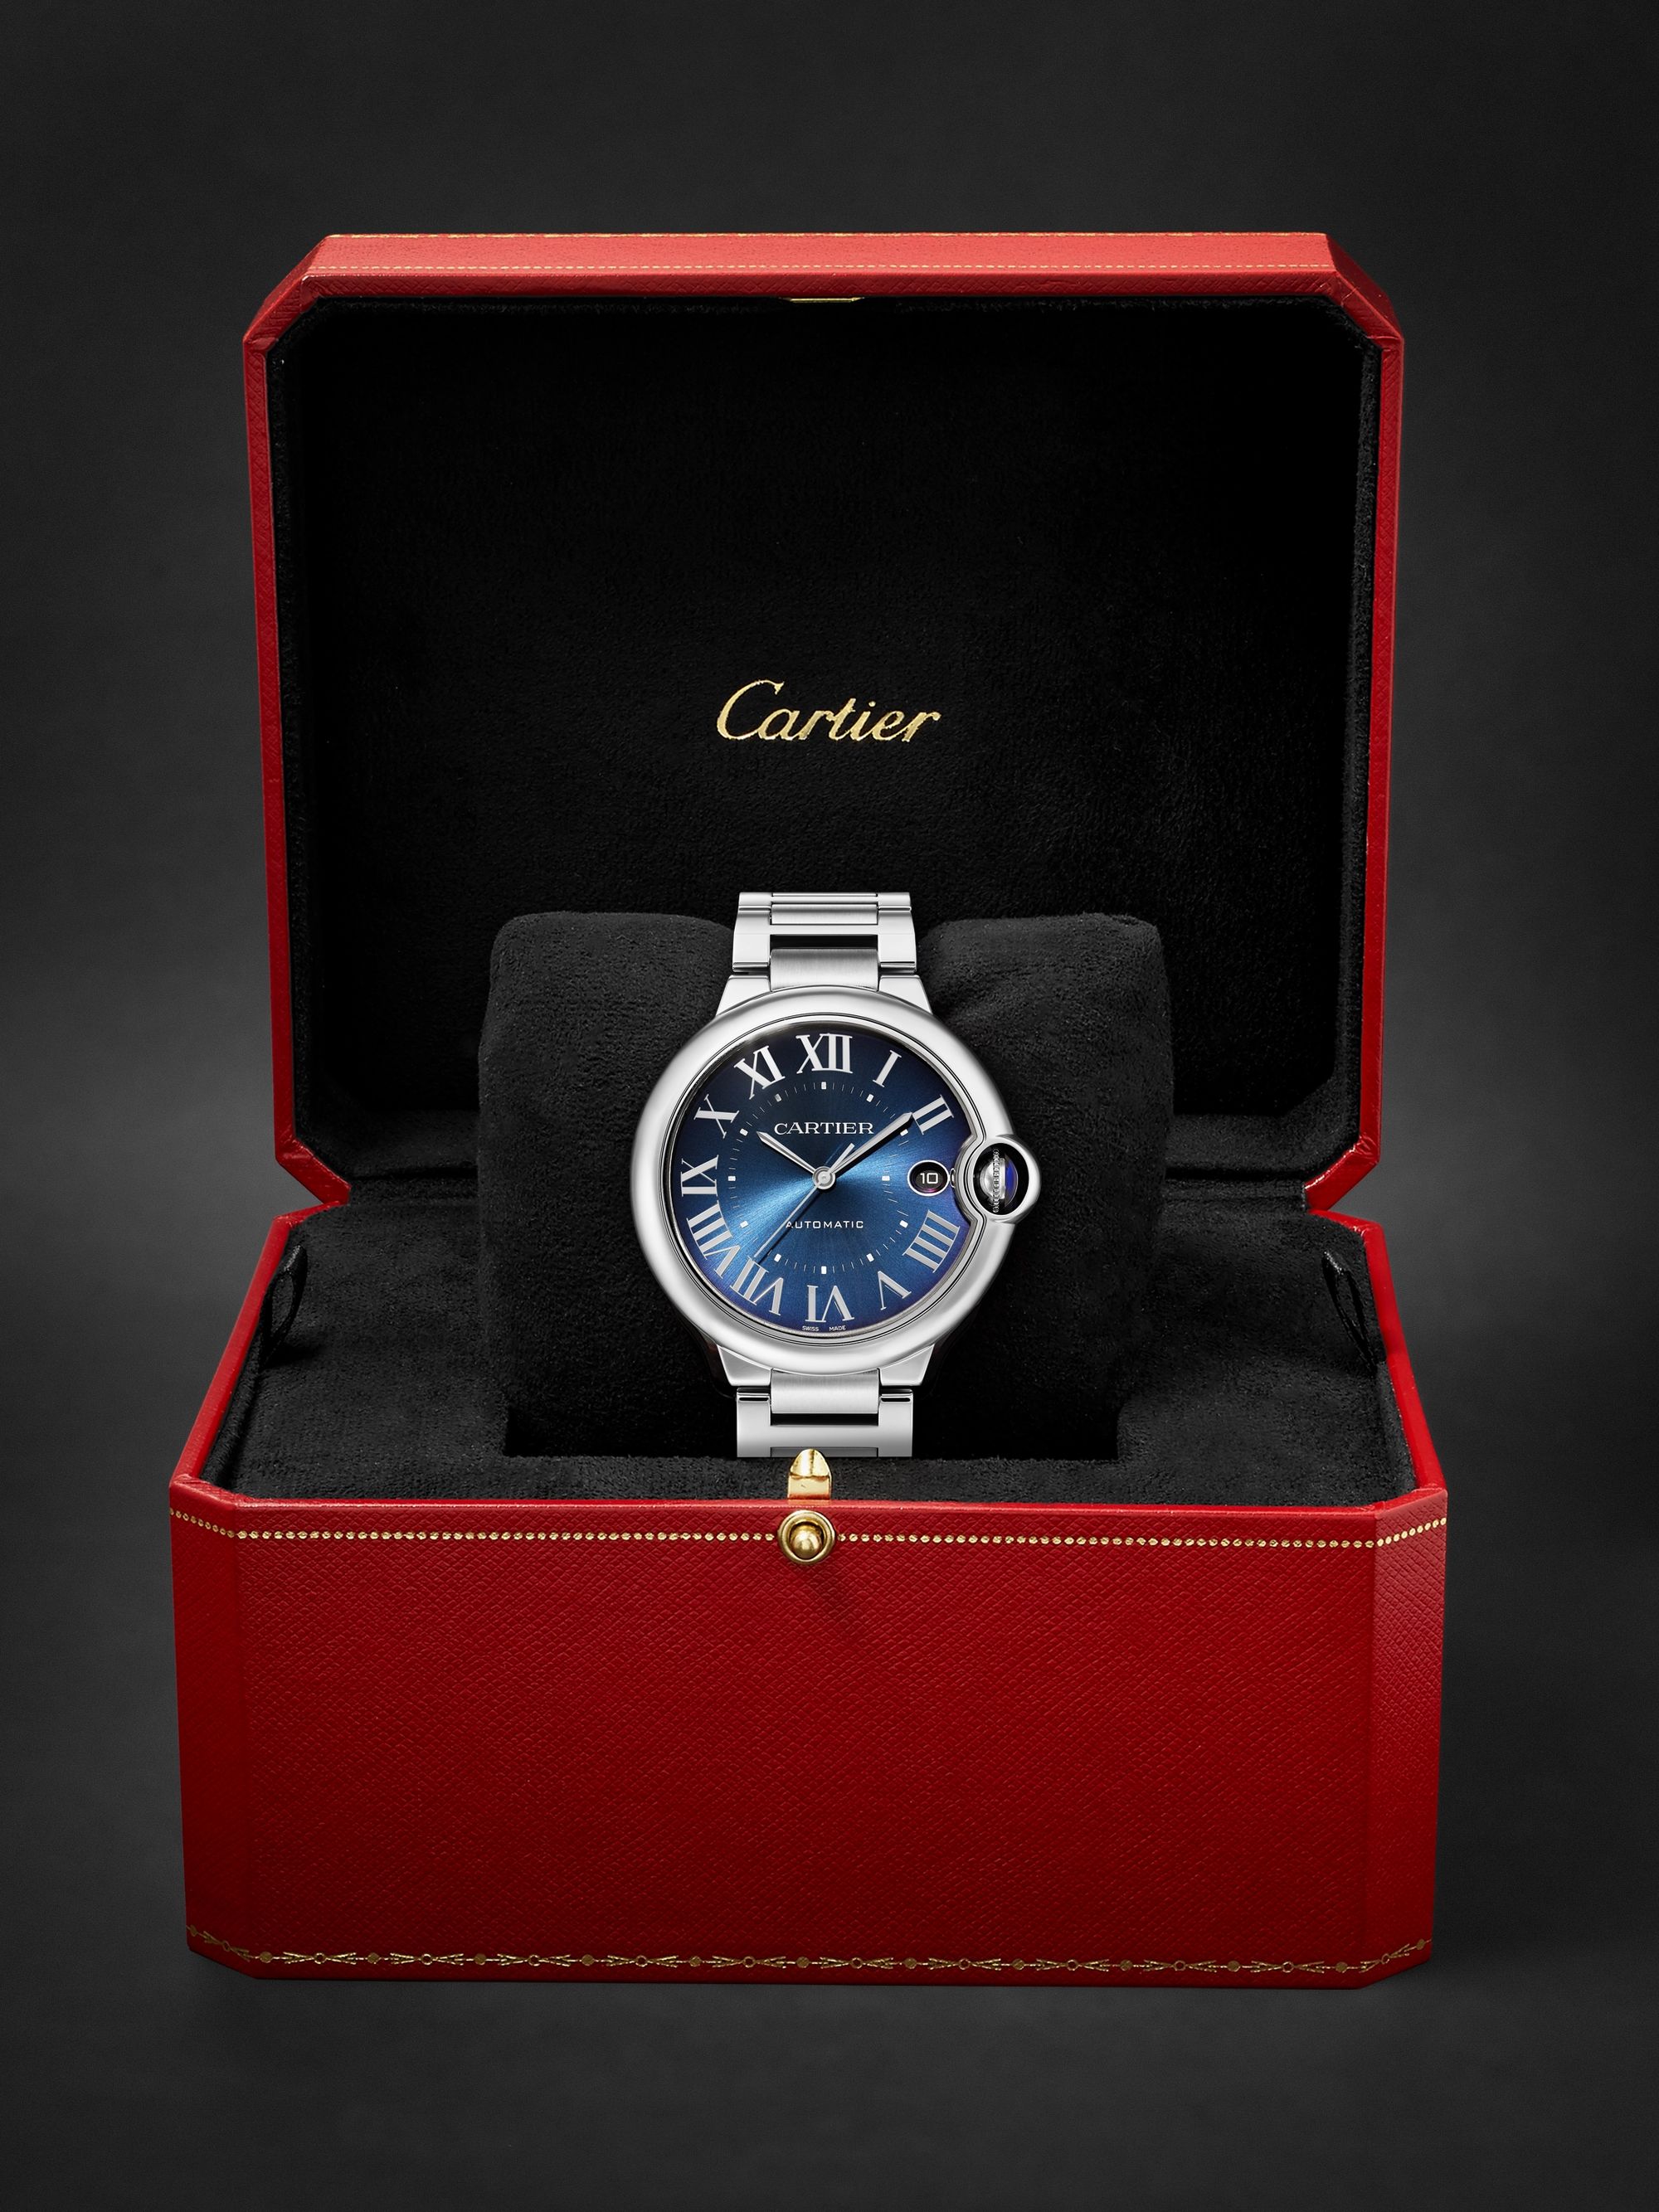 CARTIER Ballon Bleu de Cartier Automatic 40mm Stainless Steel Watch, Ref. No. WSBB0061